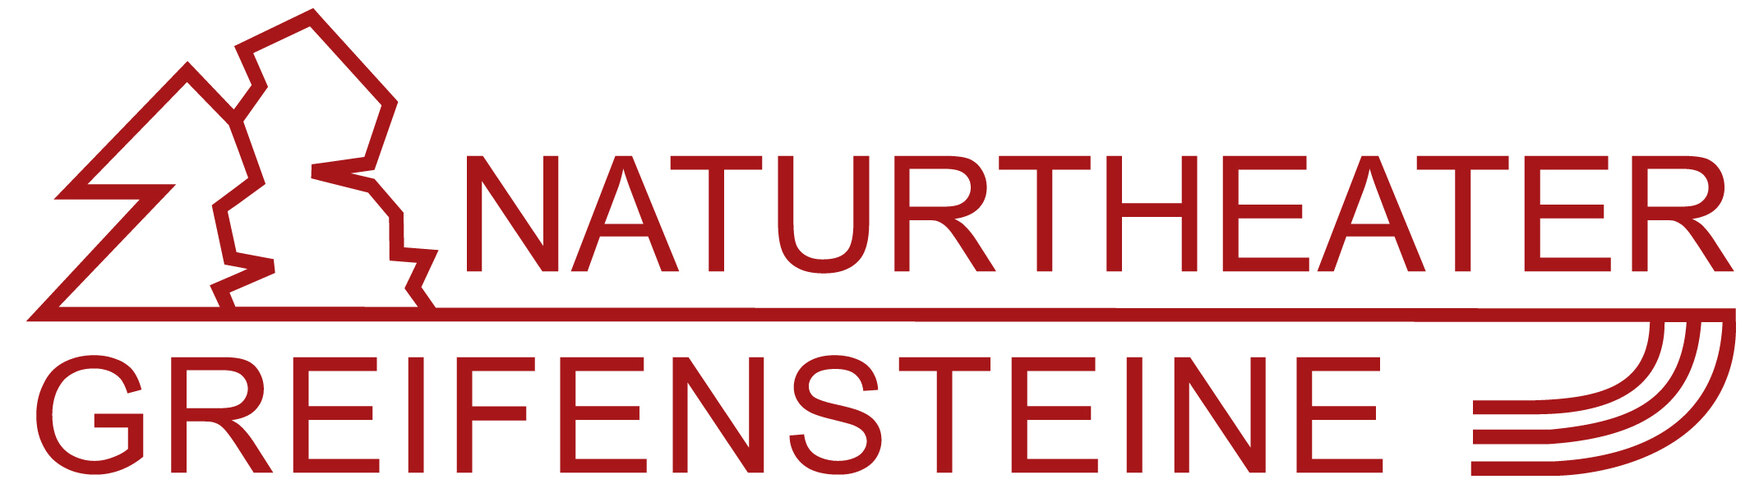 Logo Naturtheater Greifensteine 